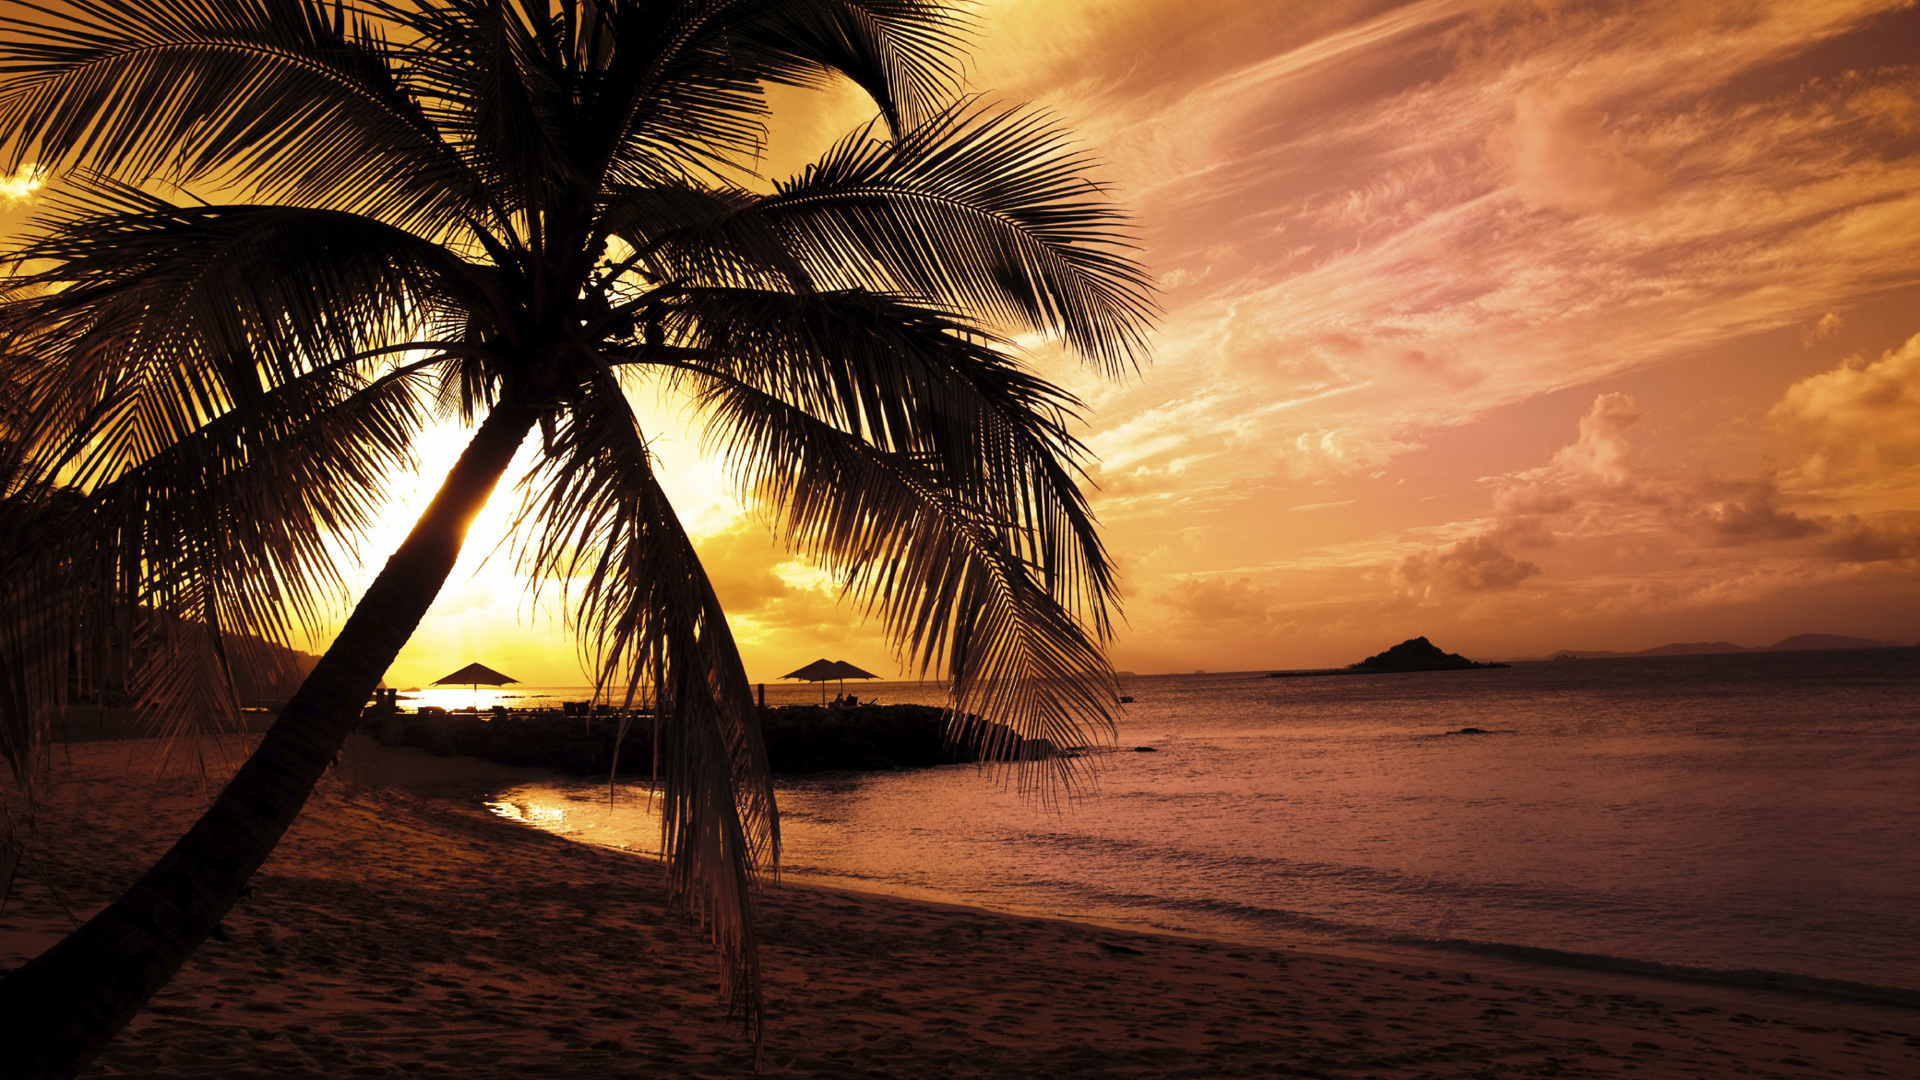 fondos de pantalla full hd 1080p caliente,cielo,naturaleza,árbol,puesta de sol,palmera